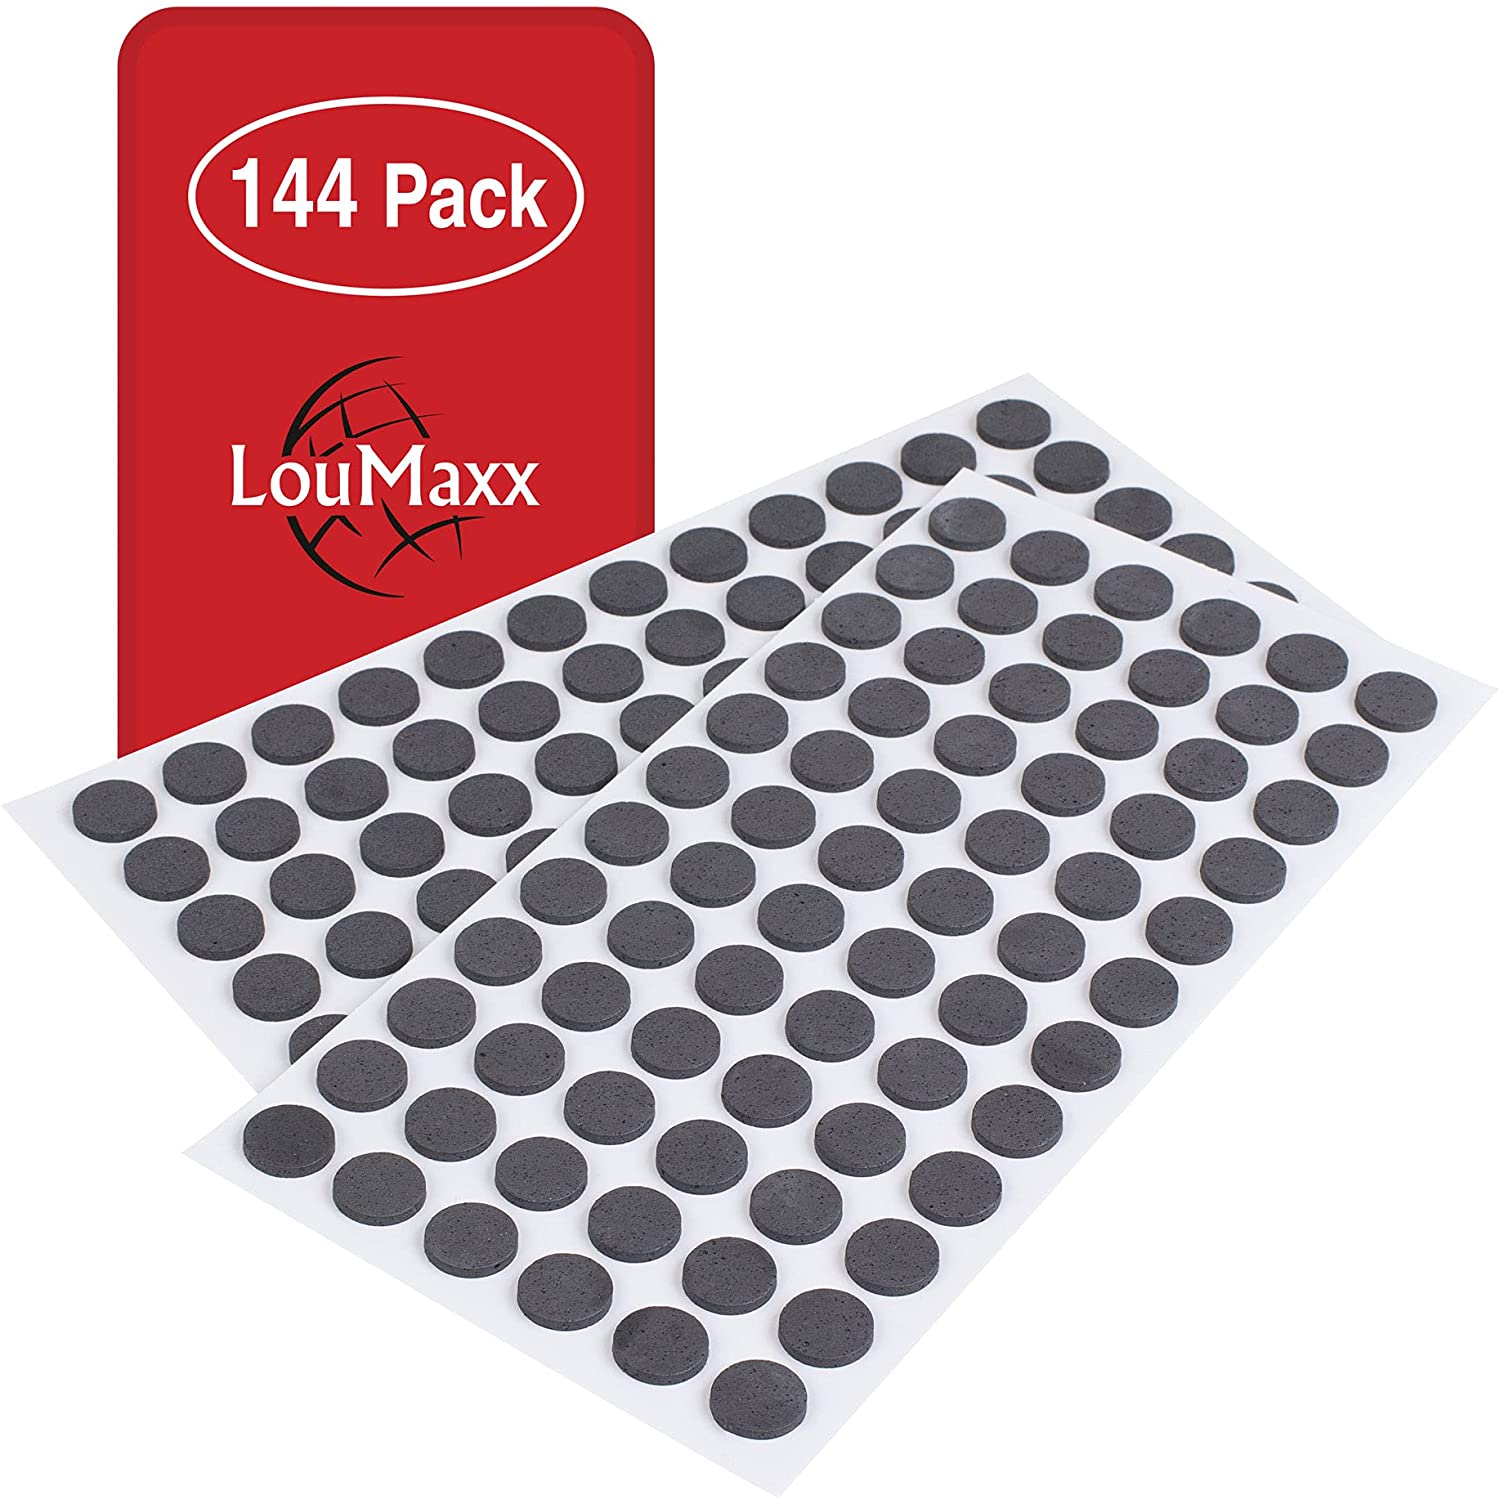 LouMaxx Antirutsch Pads selbstklebend | 144 x Anti Rutsch Möbelstopper schwarz, rund Ø 15 mm | rutschhemmend mit extra starkem Halt